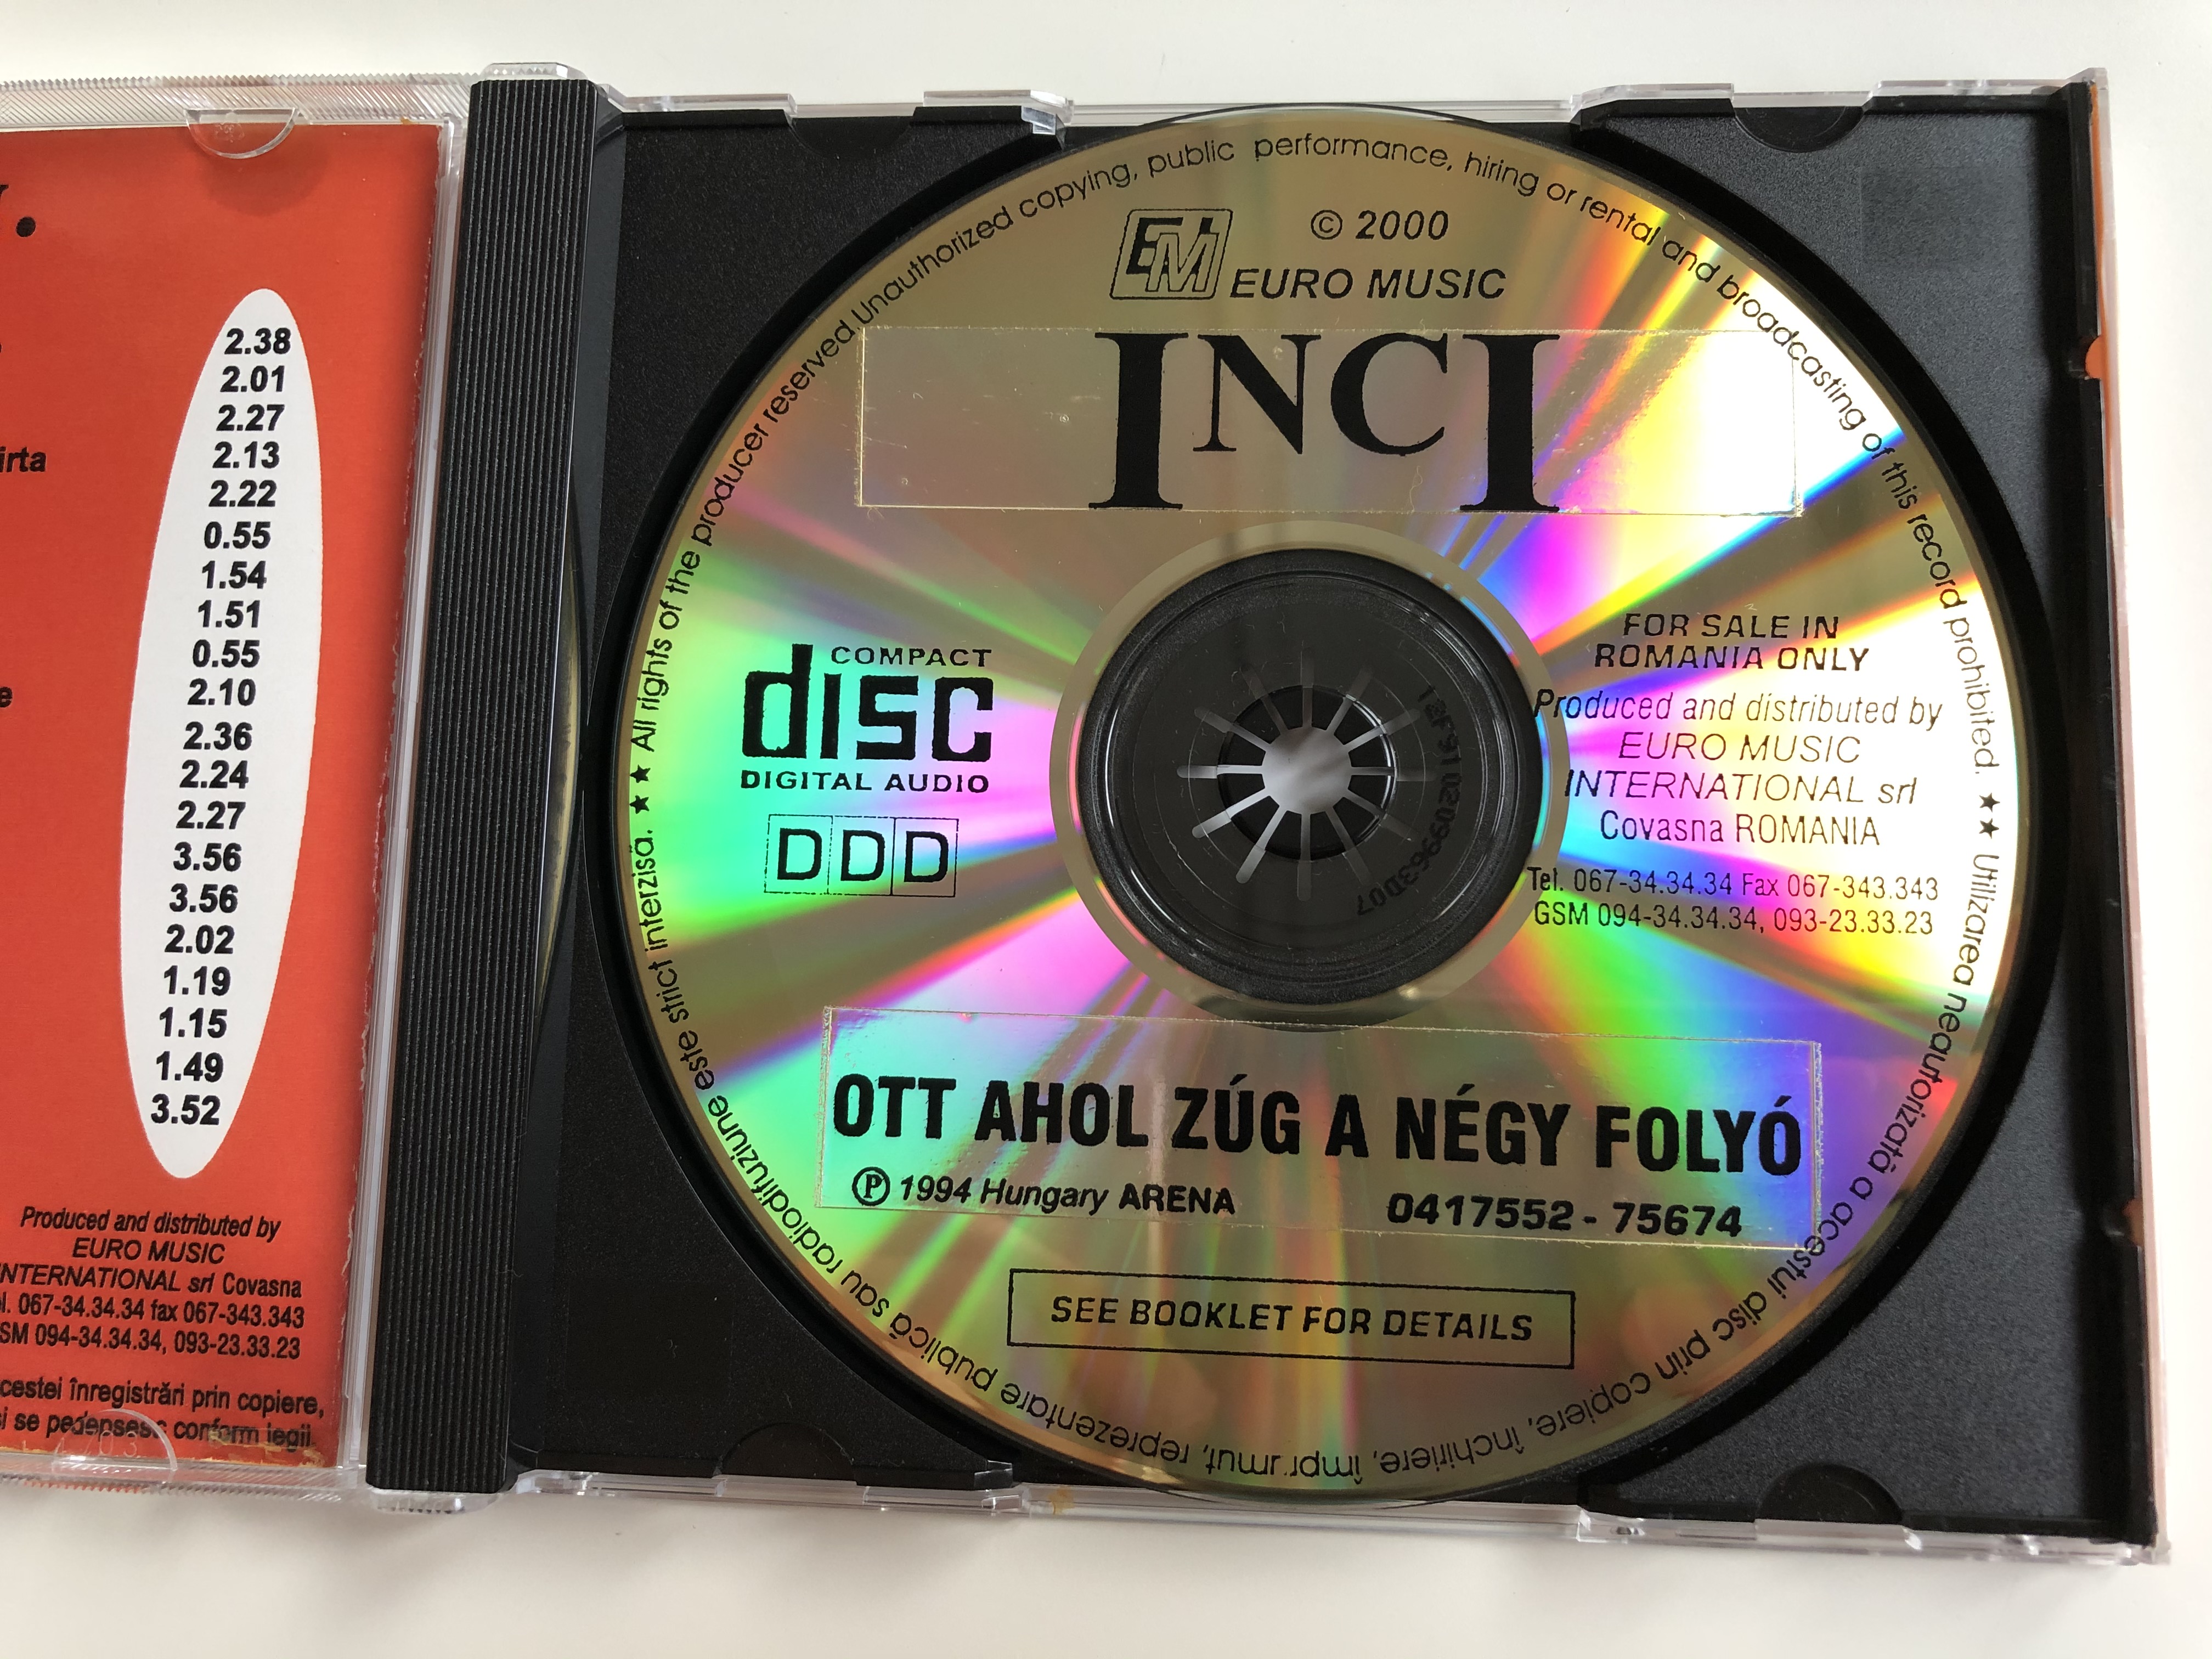 inci-ott-ahol-z-g-a-n-gy-foly-euro-music-audio-cd-2000-75674-3-.jpg